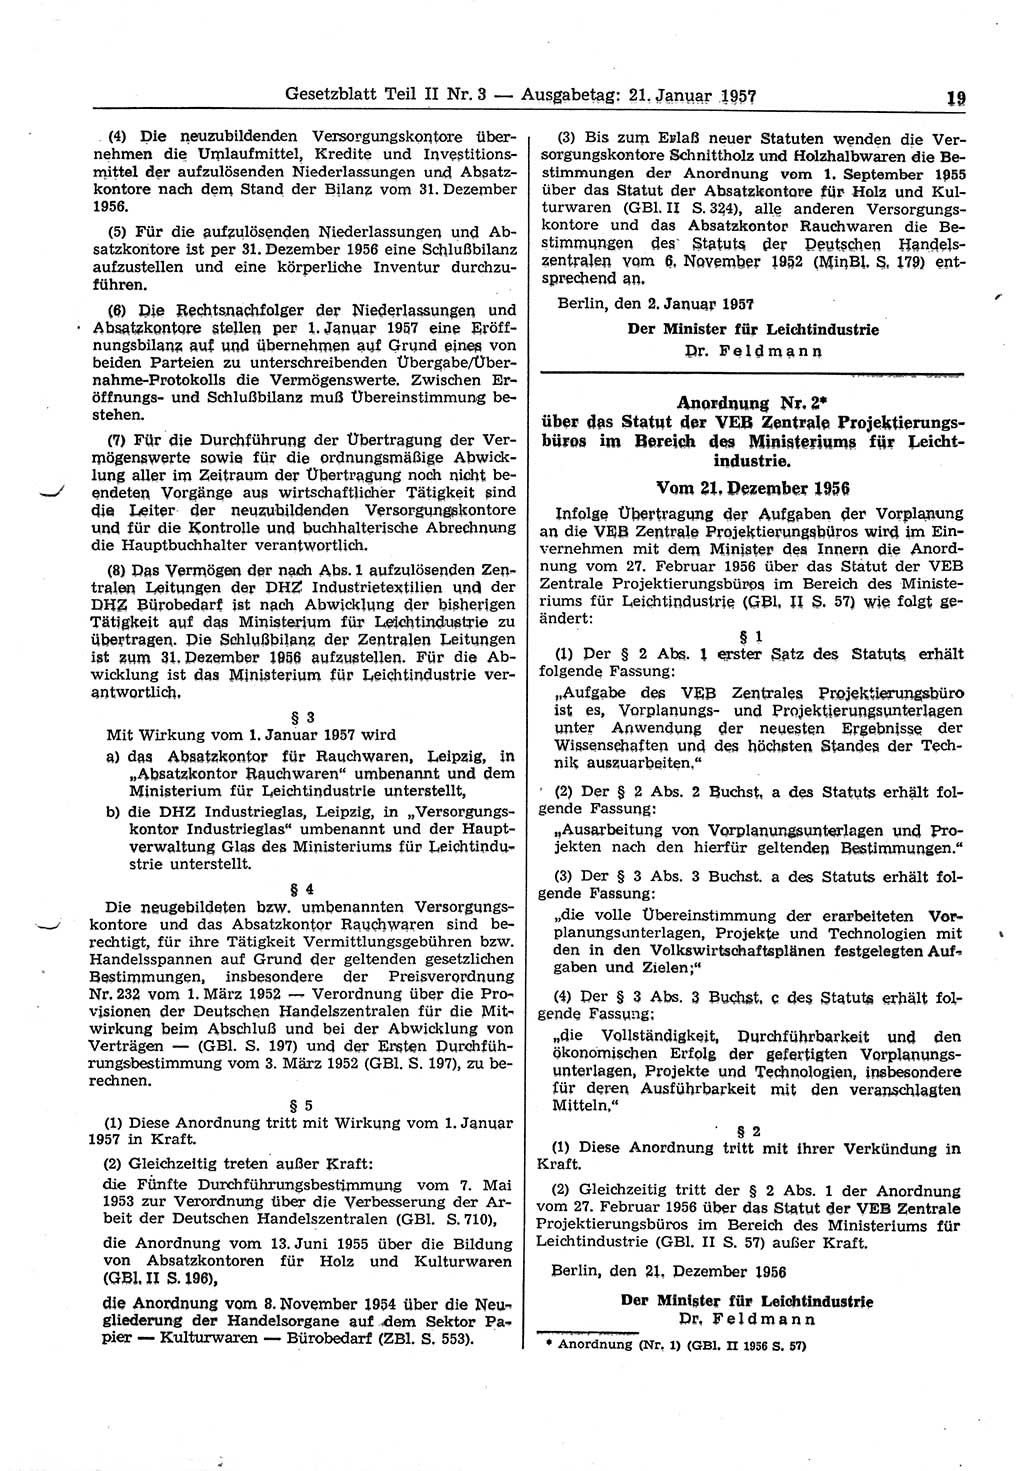 Gesetzblatt (GBl.) der Deutschen Demokratischen Republik (DDR) Teil ⅠⅠ 1957, Seite 19 (GBl. DDR ⅠⅠ 1957, S. 19)